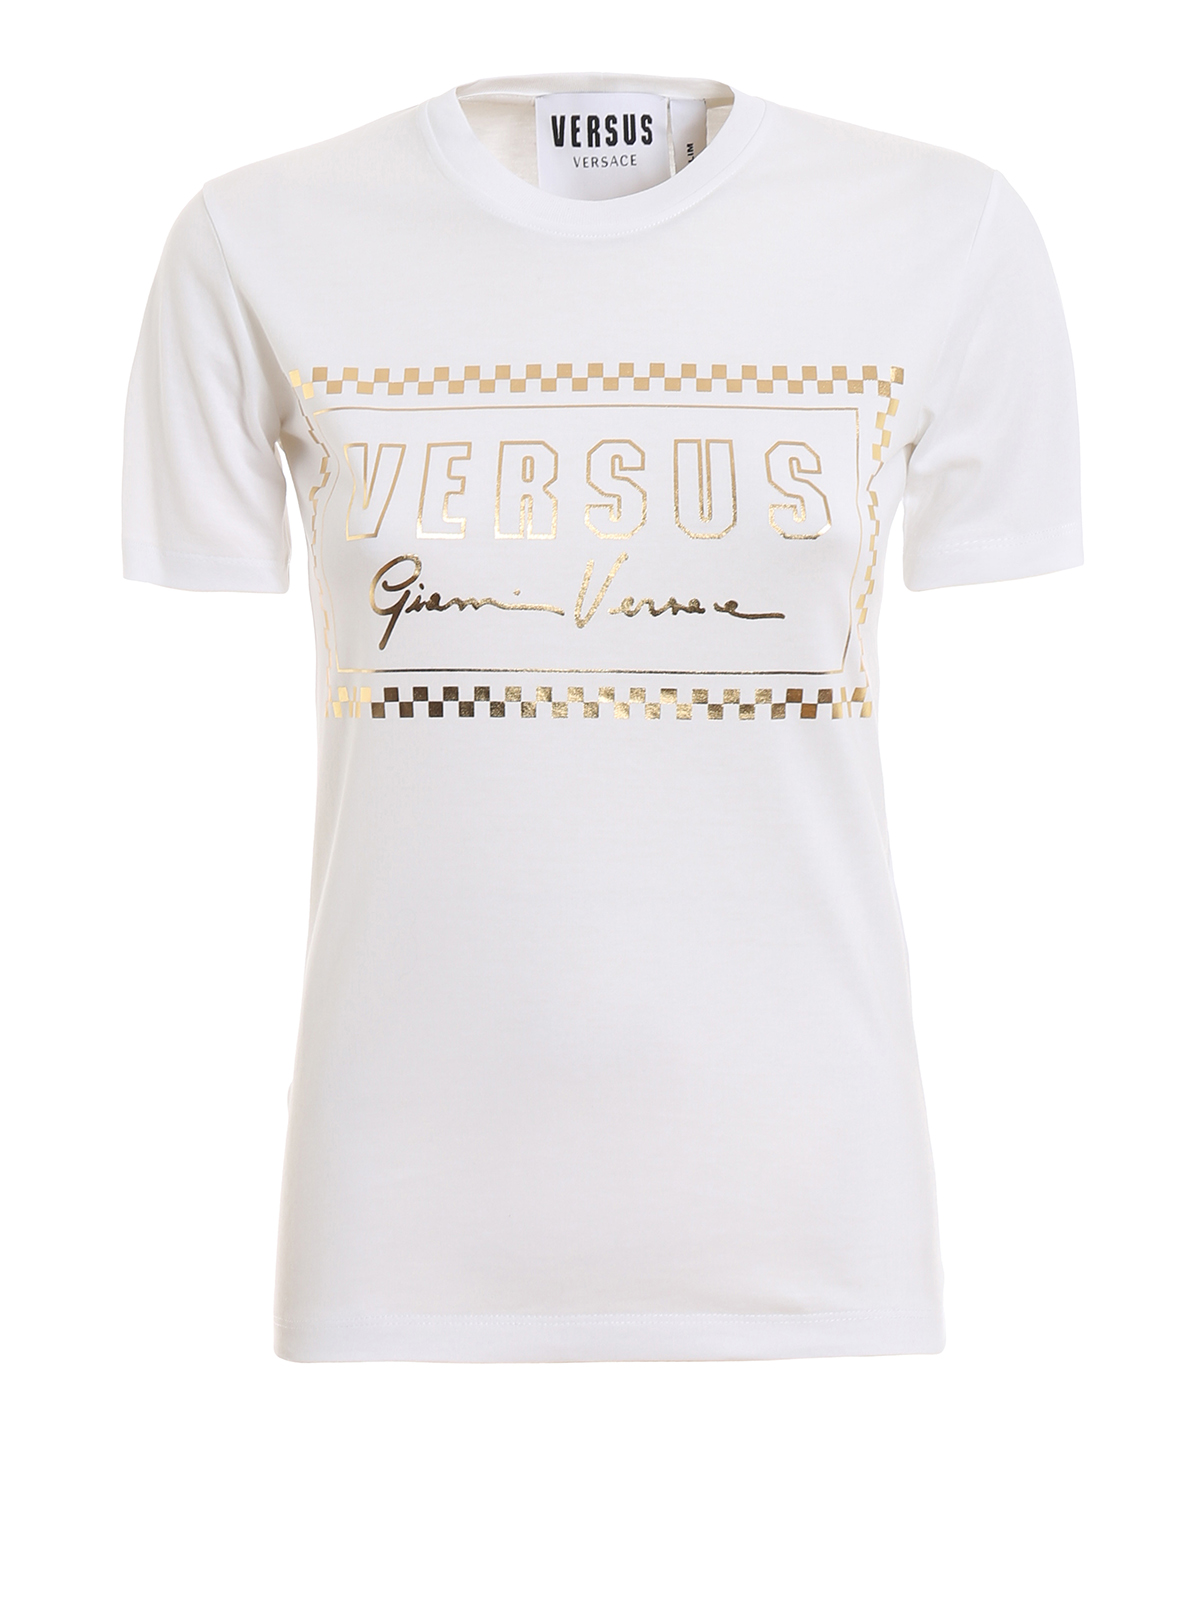 versus versace t shirt